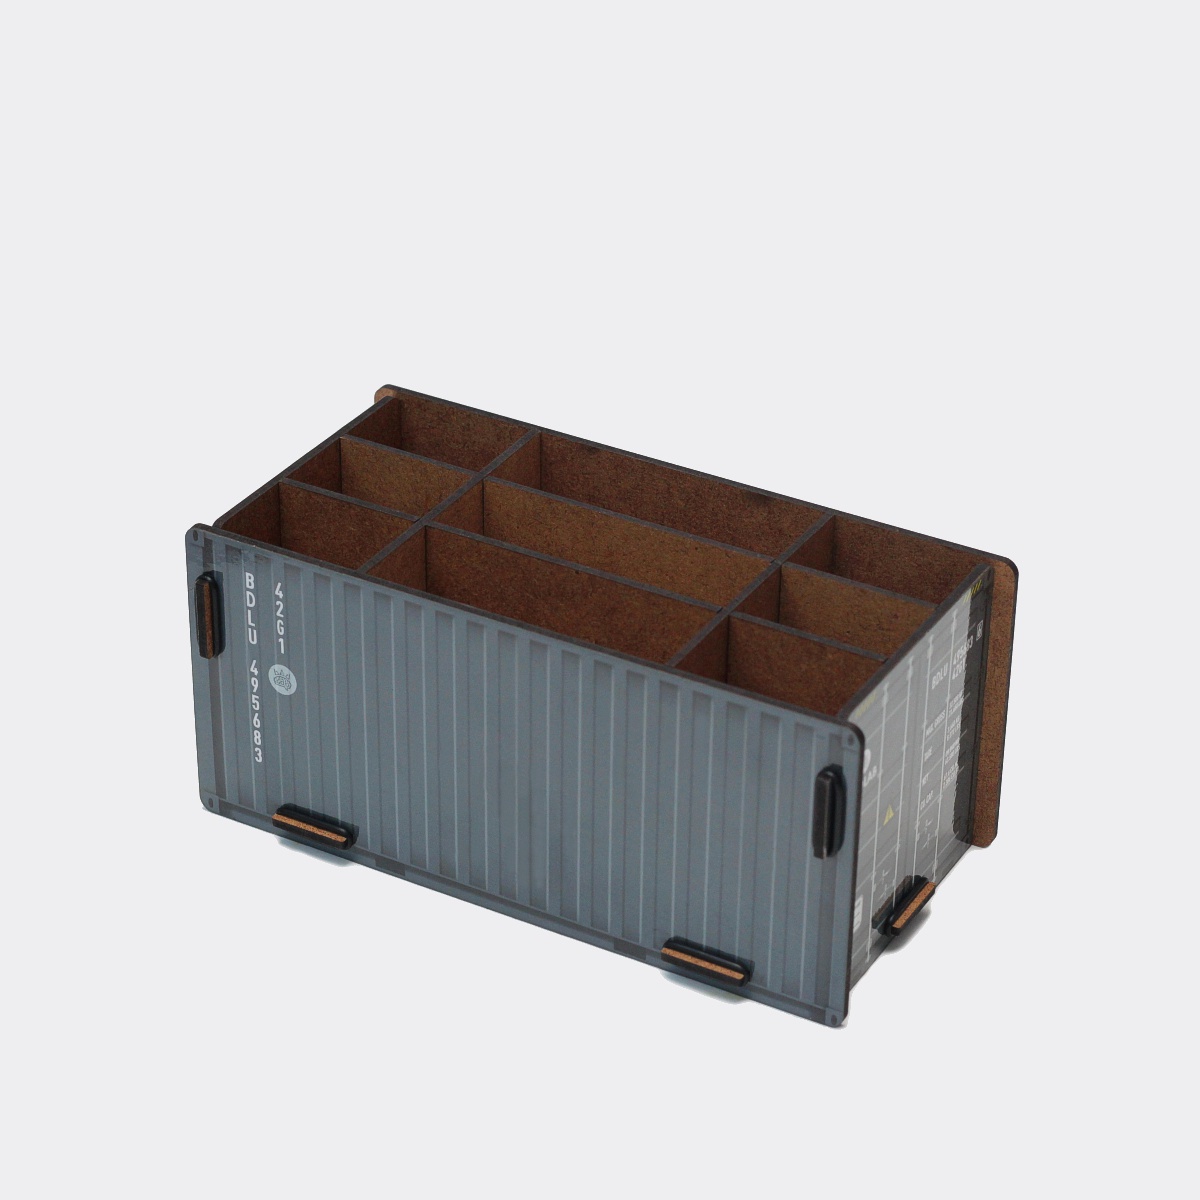 фото Органайзер настольный BADLAB Органайзер для аксессуаров Cargo Container